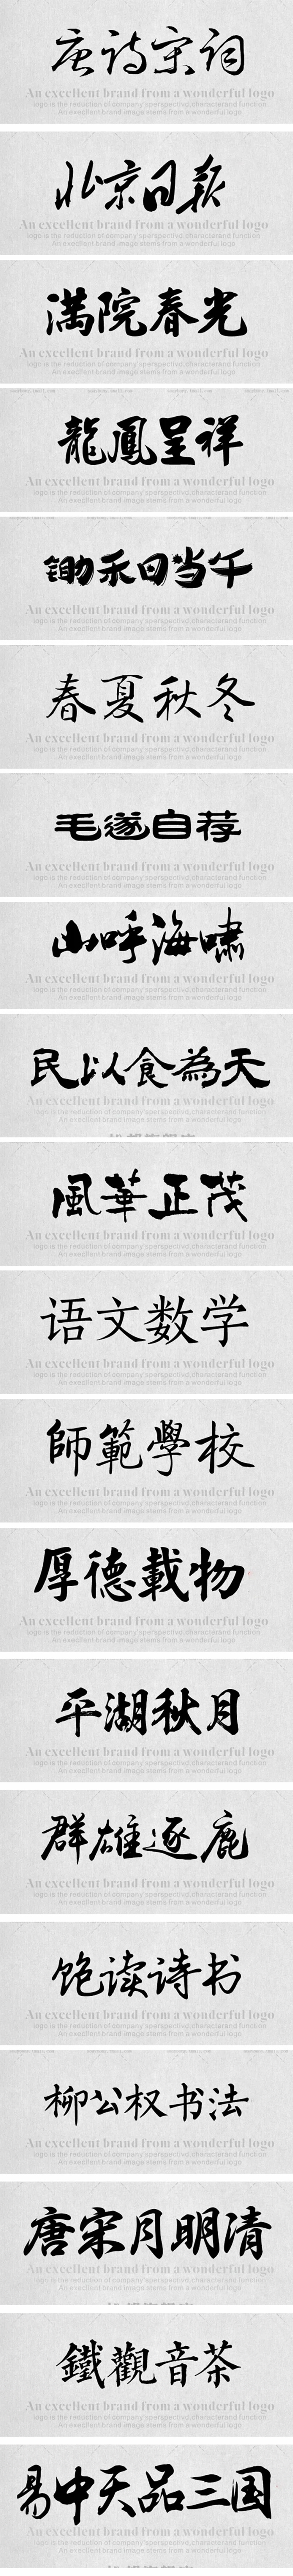 350款书法字体ps古风字体包中文字体库下载设计中国风书法毛笔代找字体素材 mac 图片素材 第2张